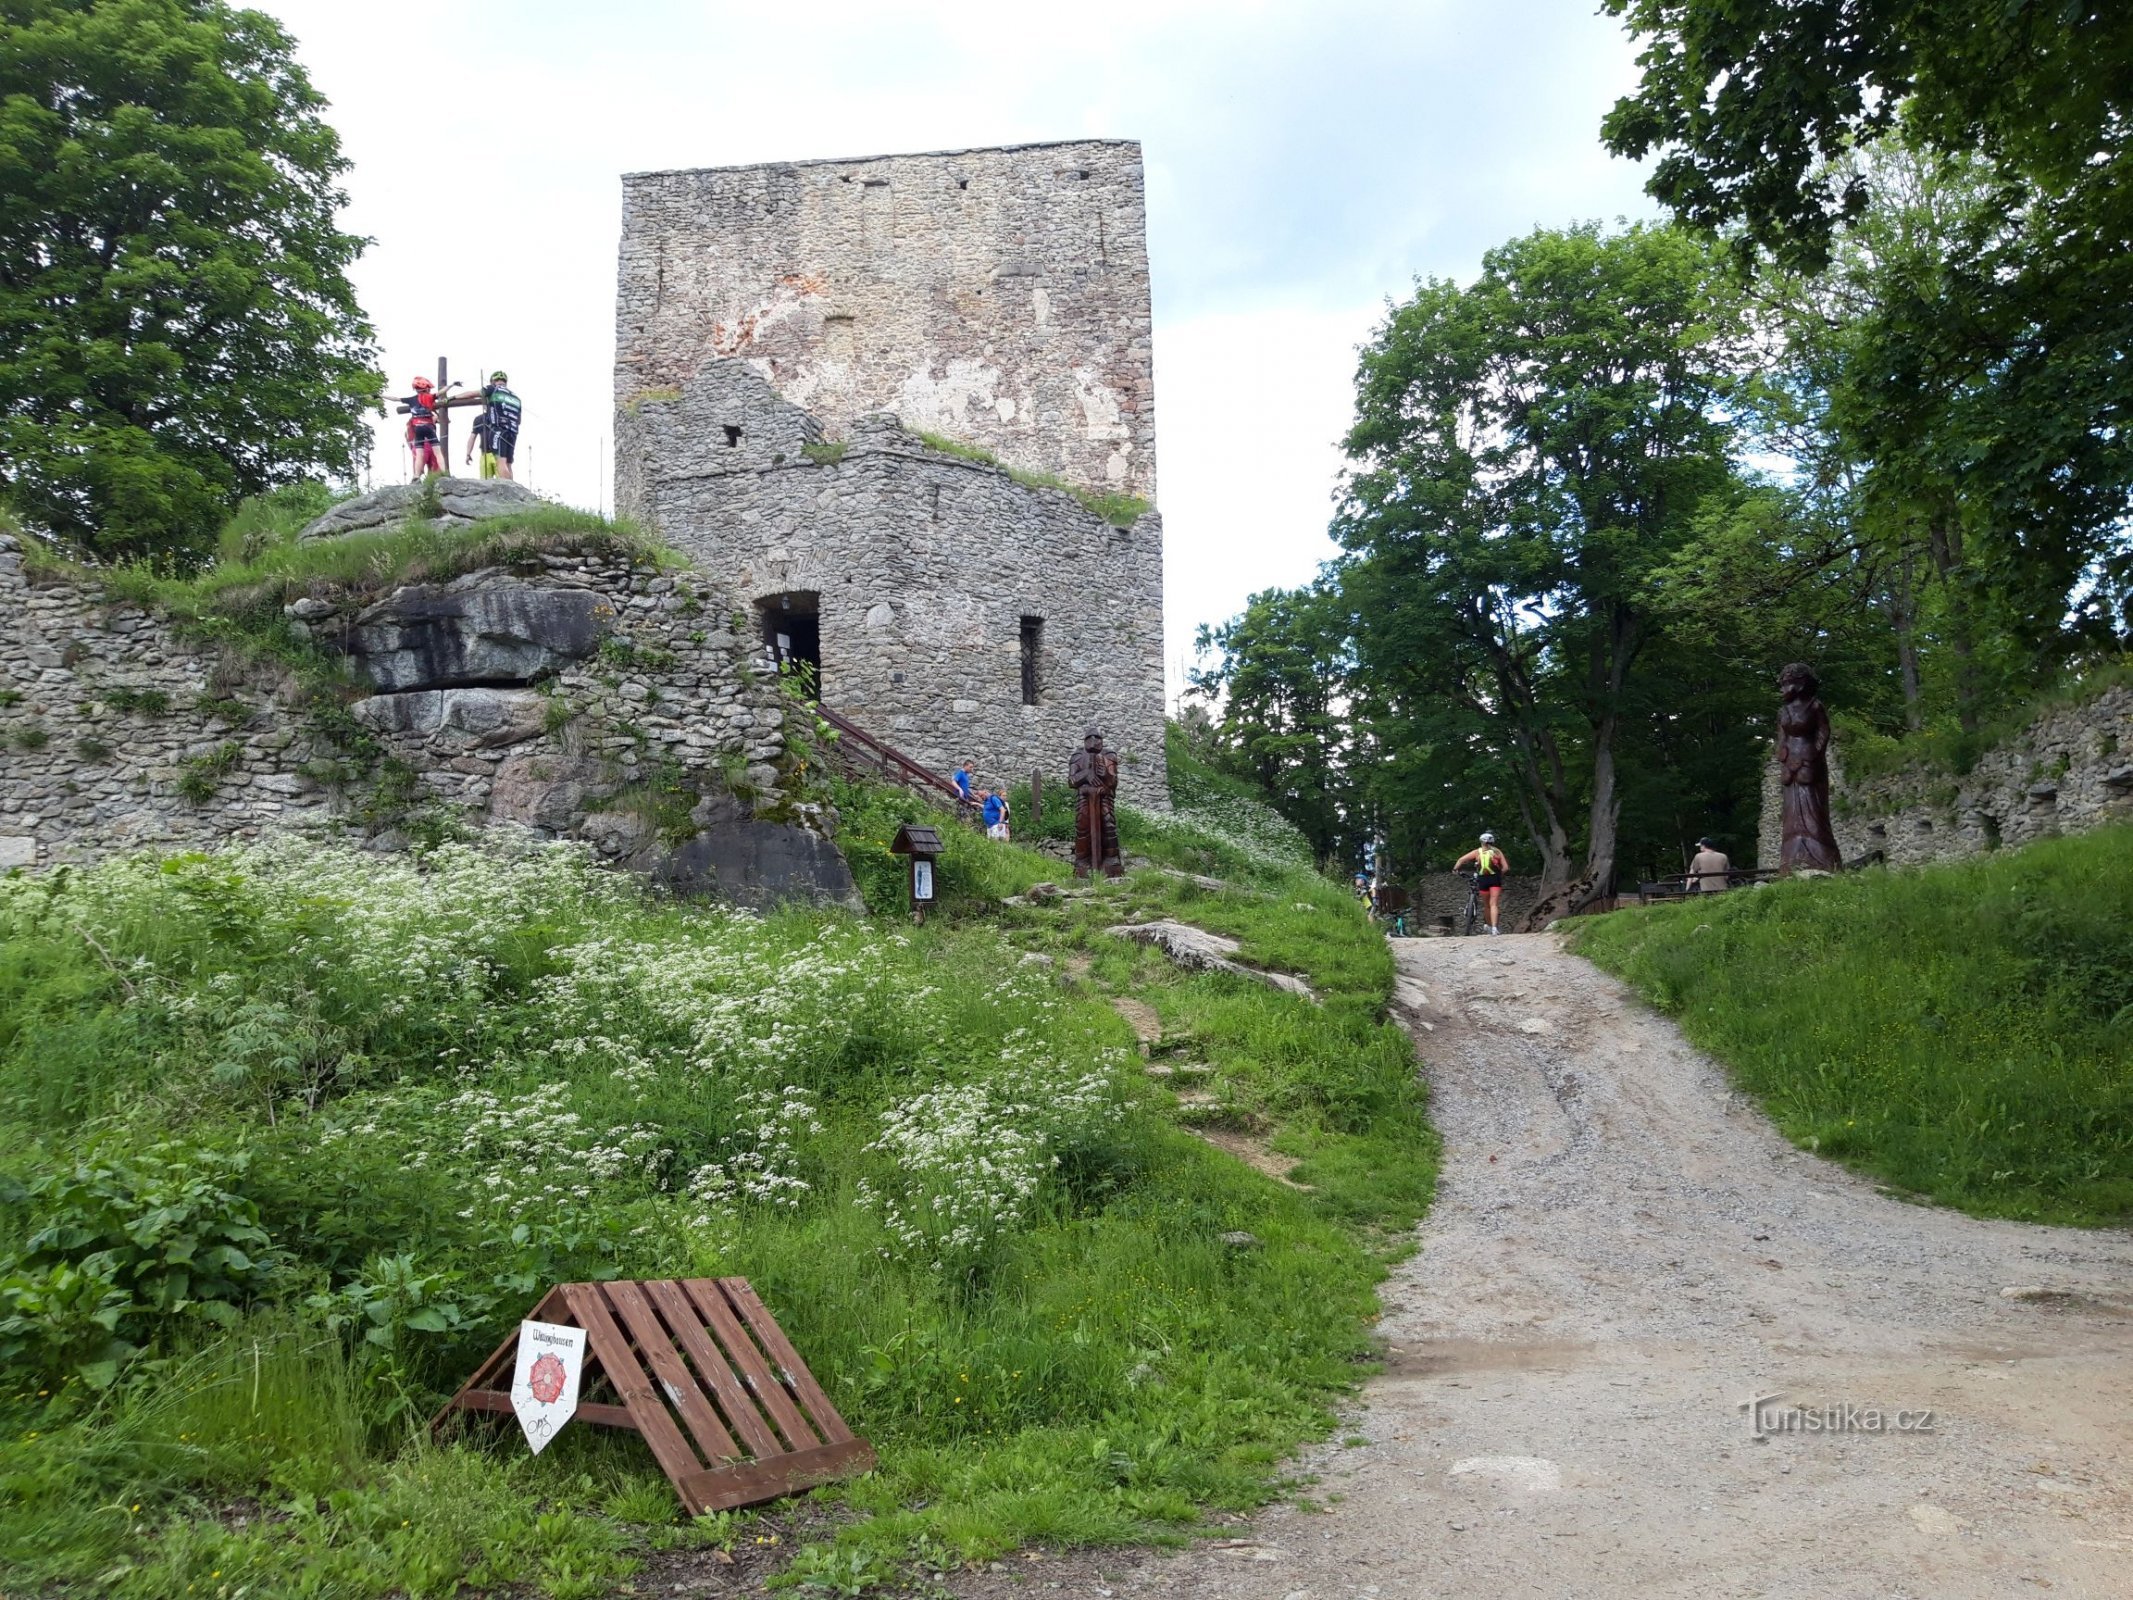 La piedra de Vítka – el castillo más alto de nuestro país